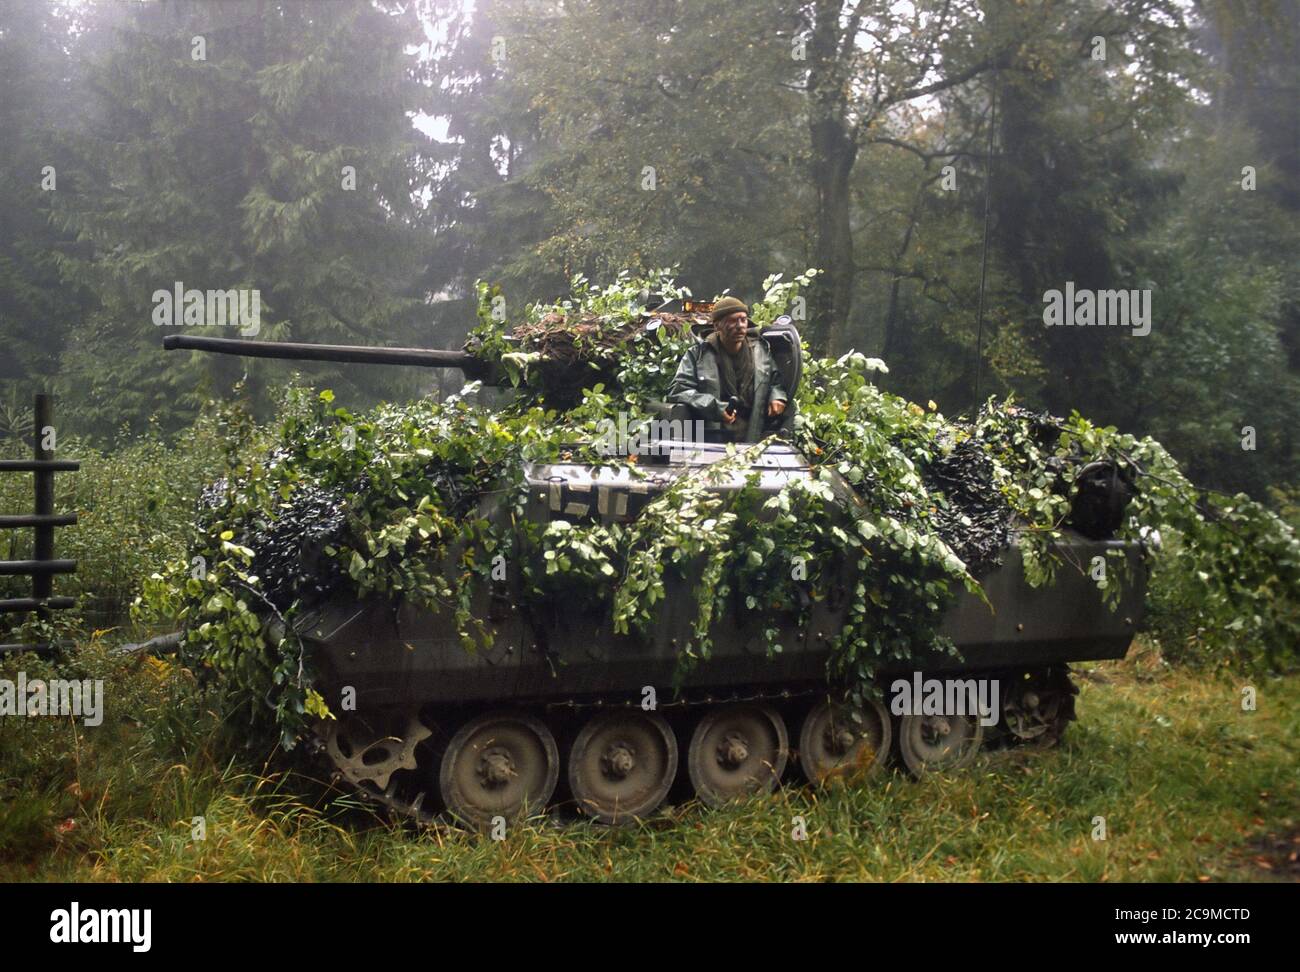 - NATO-Übungen in Deutschland, Belgische Armee YPR-765 gepanzerte Infanterie-Kampffahrzeug (September 1986) - Esercitazioni NATO in Germania, veicolo da combattimento per fanteria meccanizzata YPR-765 dell'Esercito Belga (Settembre 1986) Stockfoto